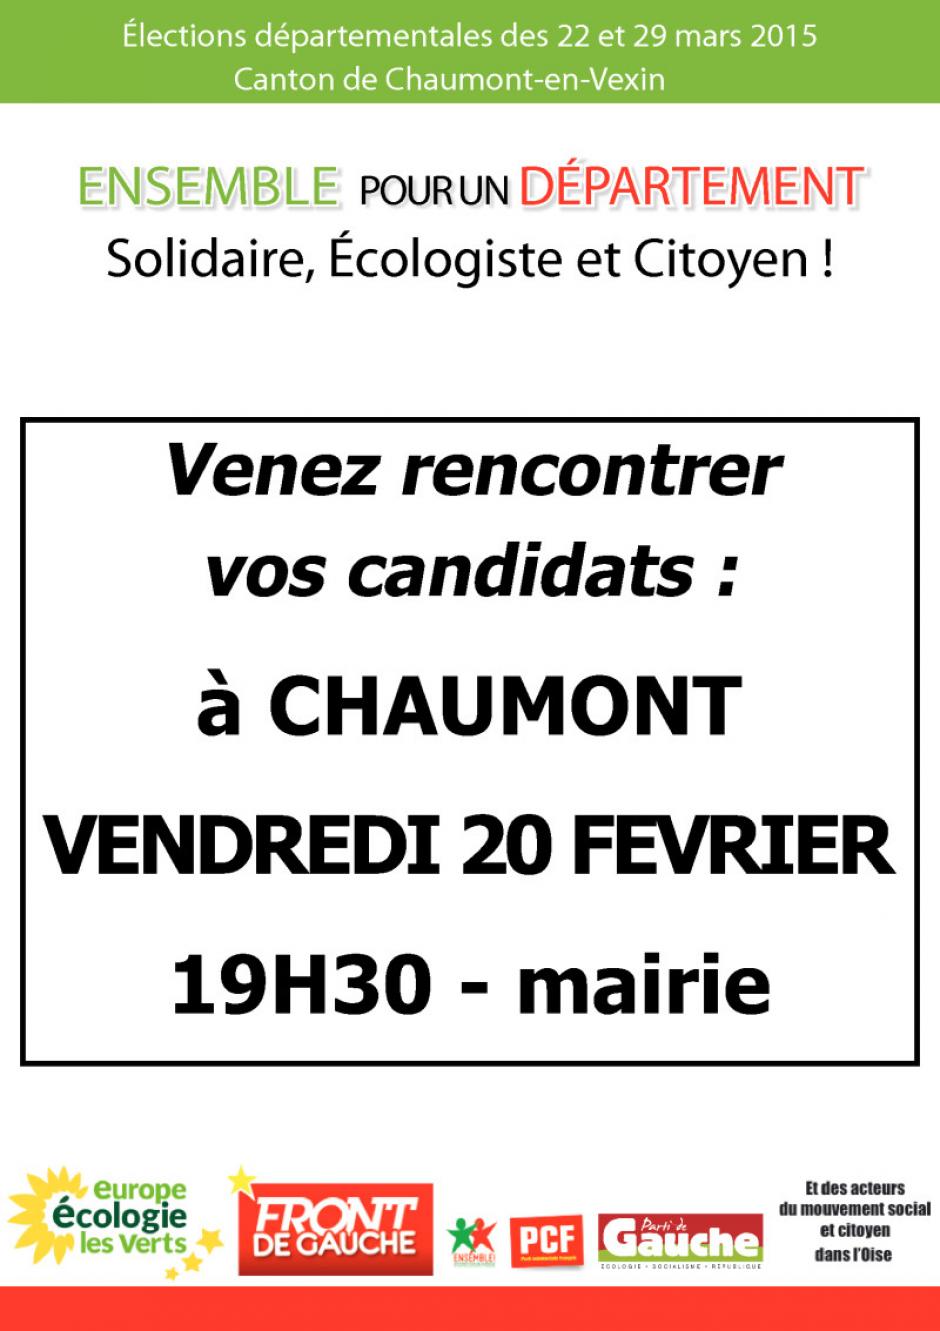 20 février, Chaumont-en-Vexin - Rencontre avec les candidats du canton de Chaumont-en-Vexin